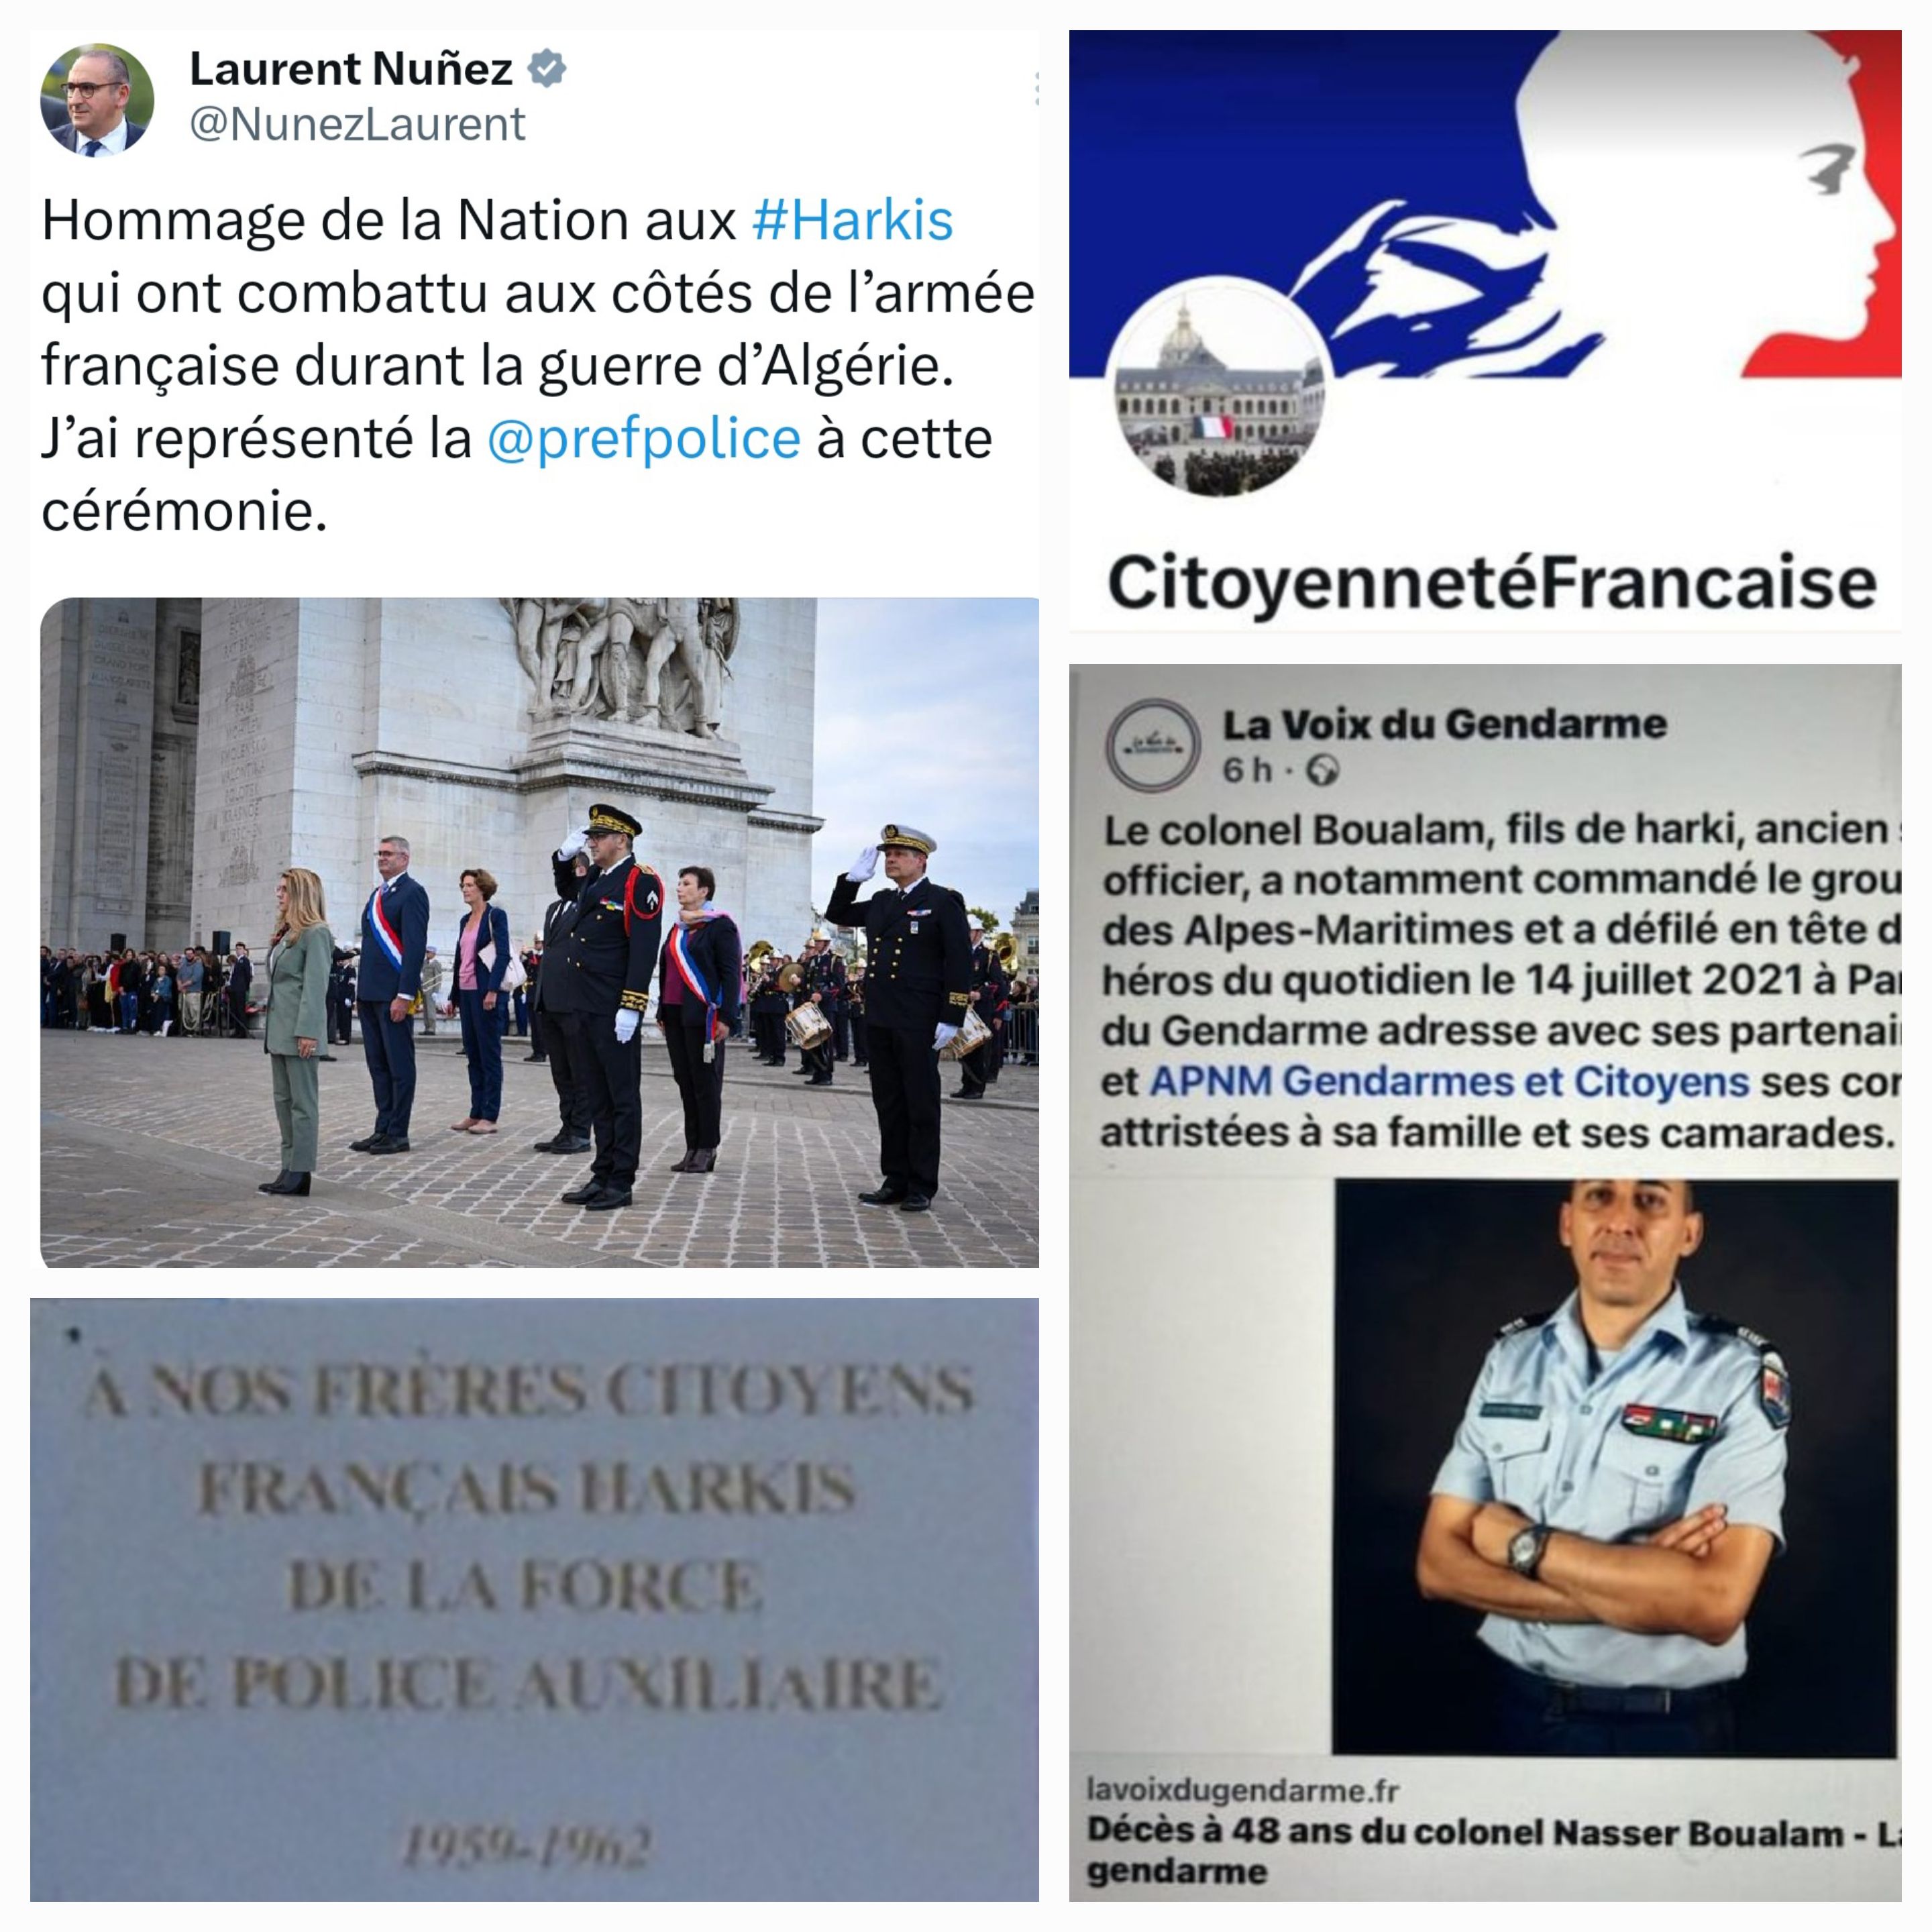 Hommage au Colonel de Gendarmerie Nasser Boualam © Inconnu / Association Citoyenneté Française